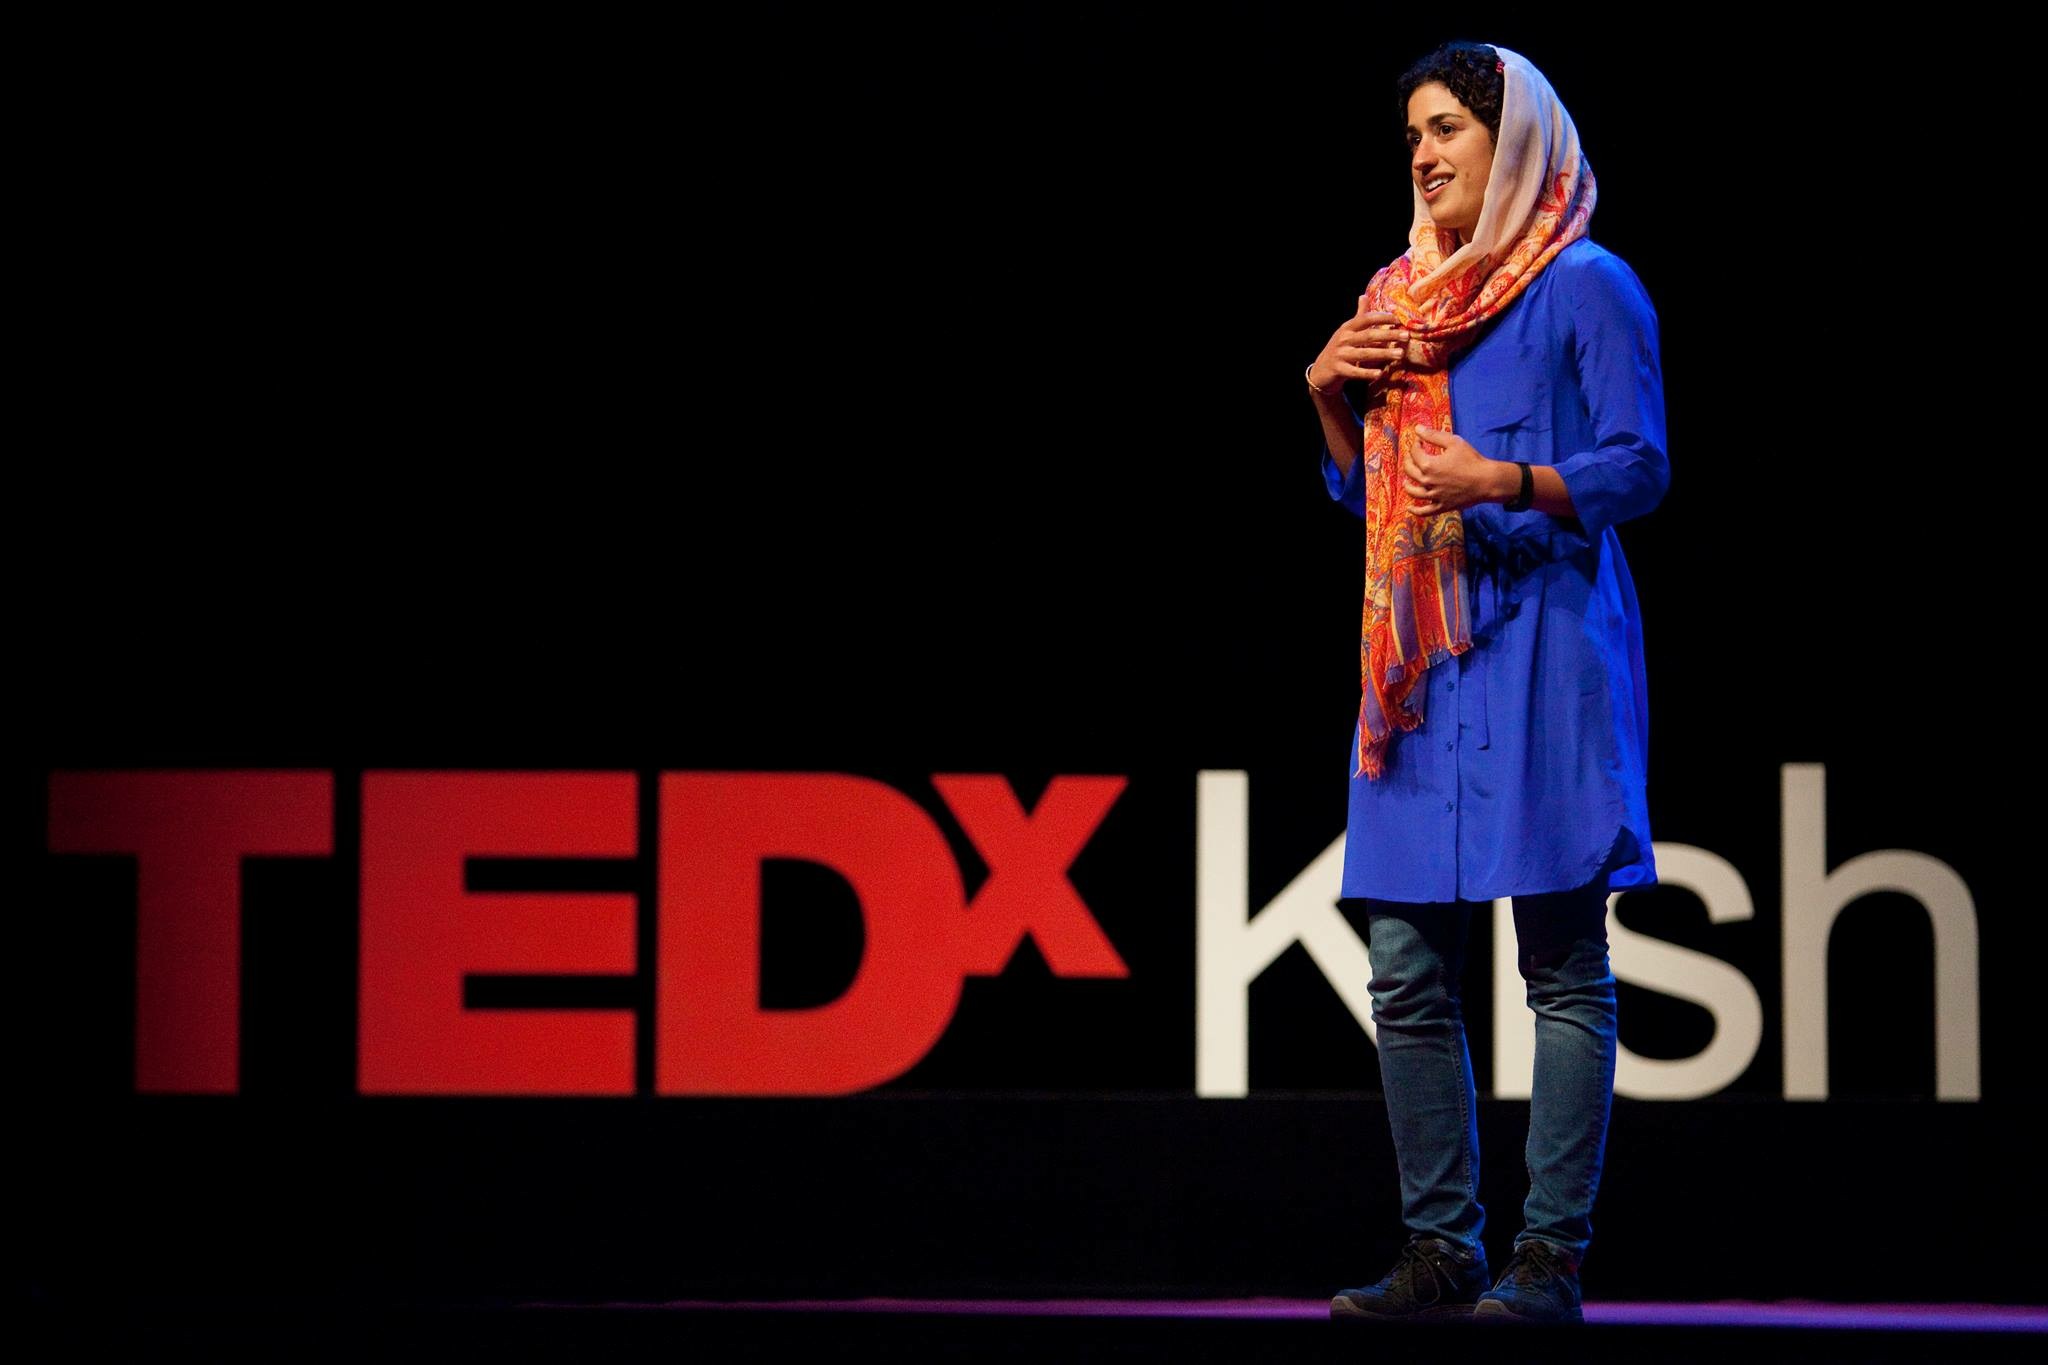 Shirin speaking at Tedx Kish. 